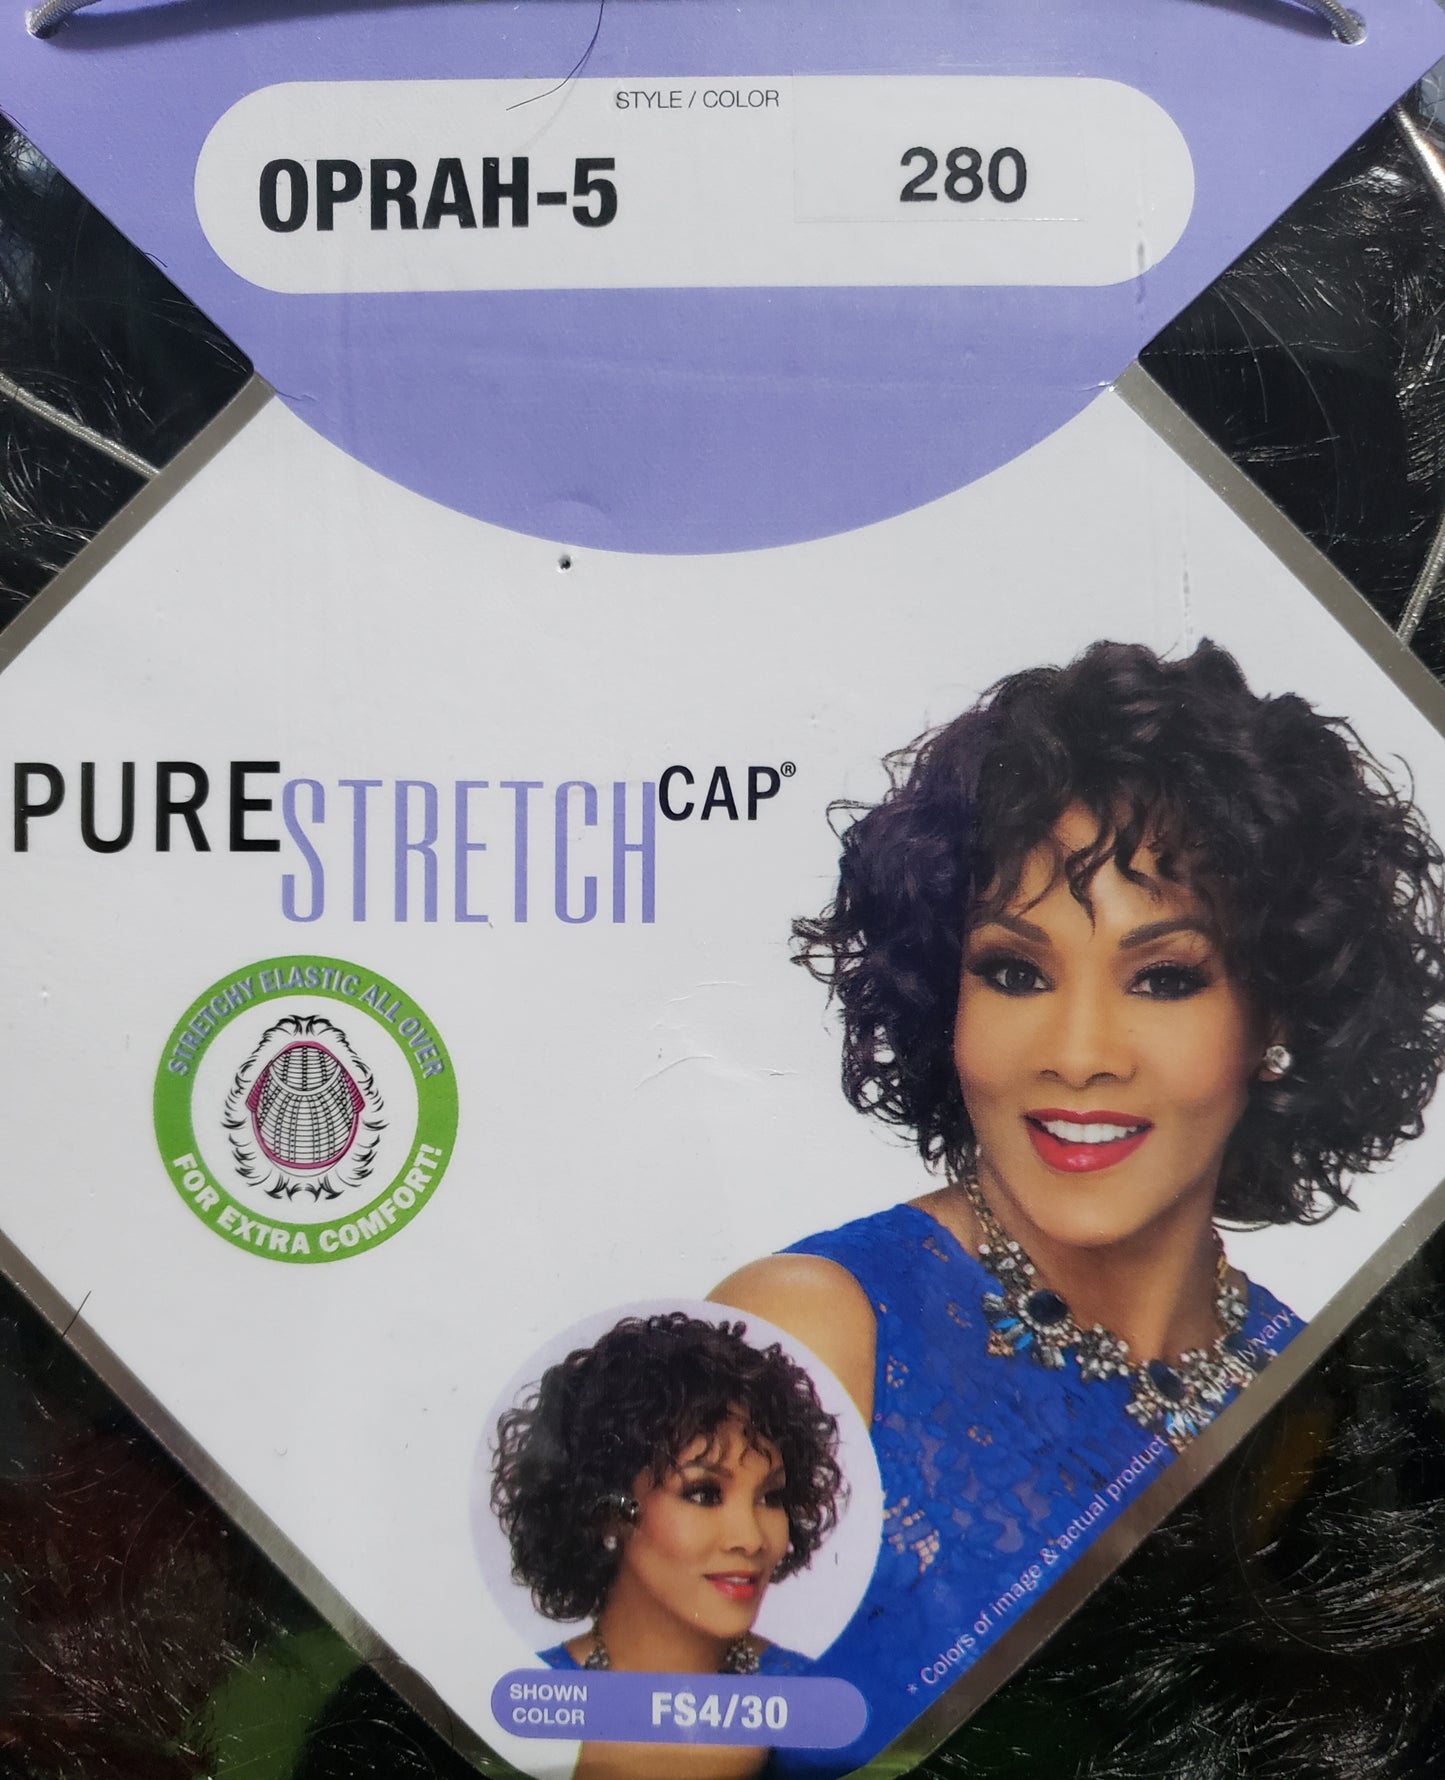 Oprah-5 Pure Stretch Wig